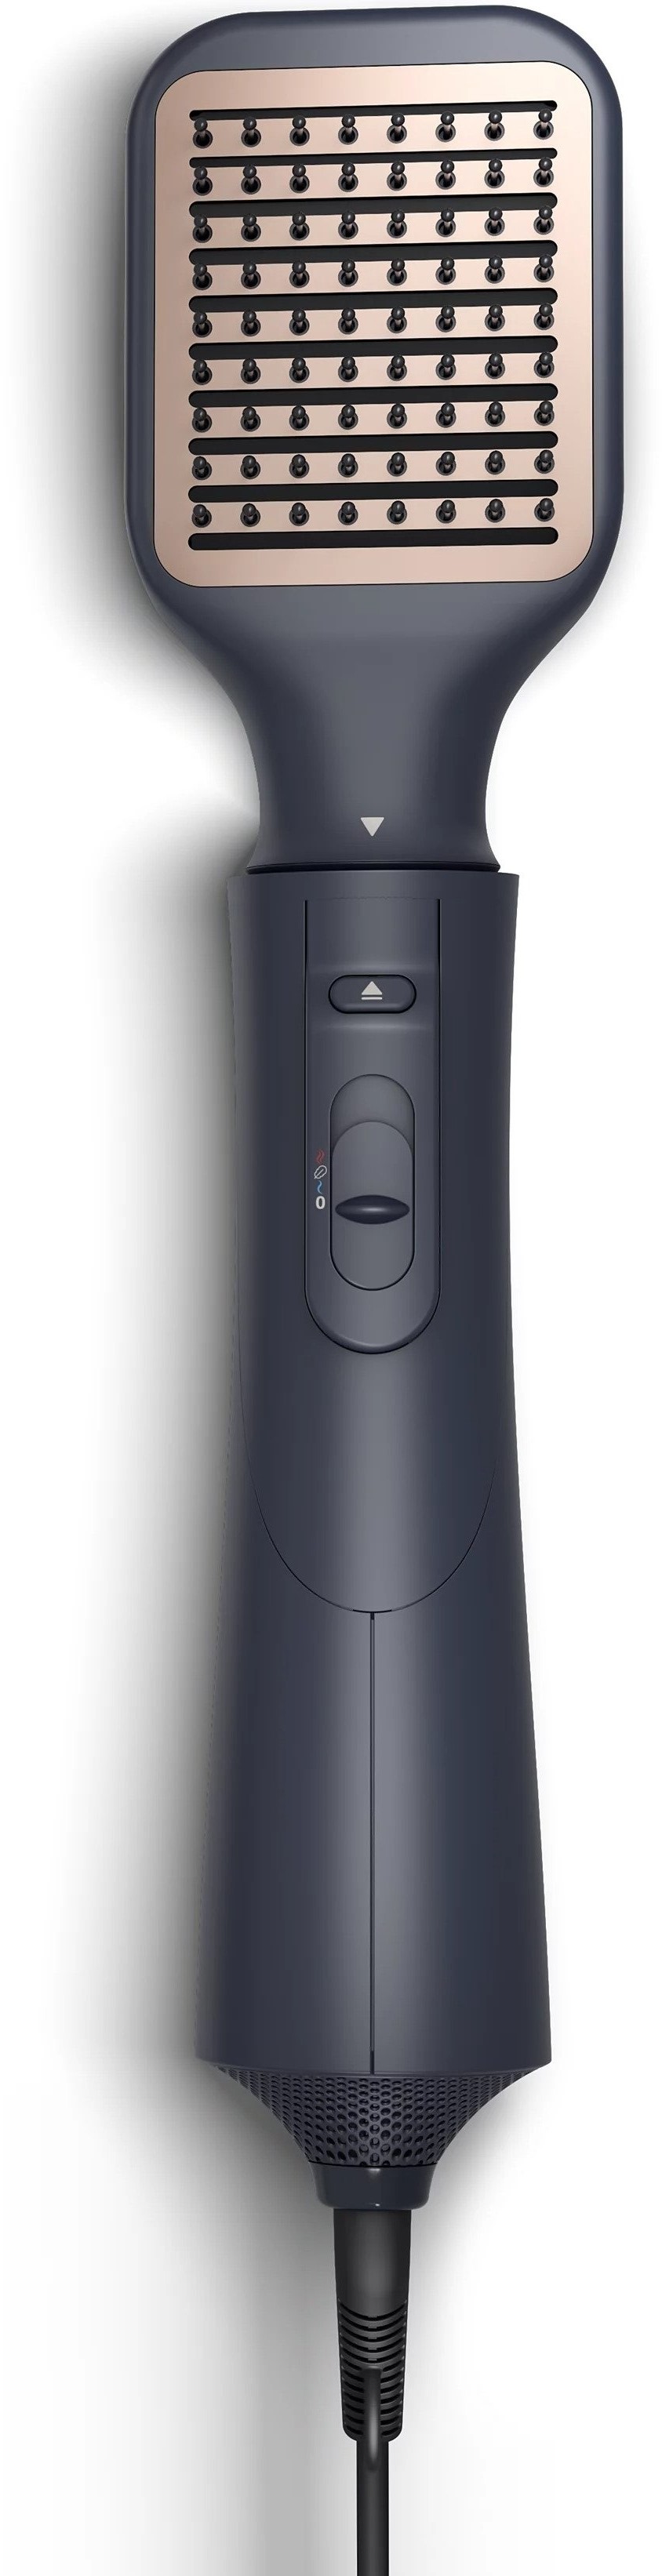 Фен-щітка Philips 5000 Series 1000Вт, 3 режими, іонізація, 5 насадок, синий фото